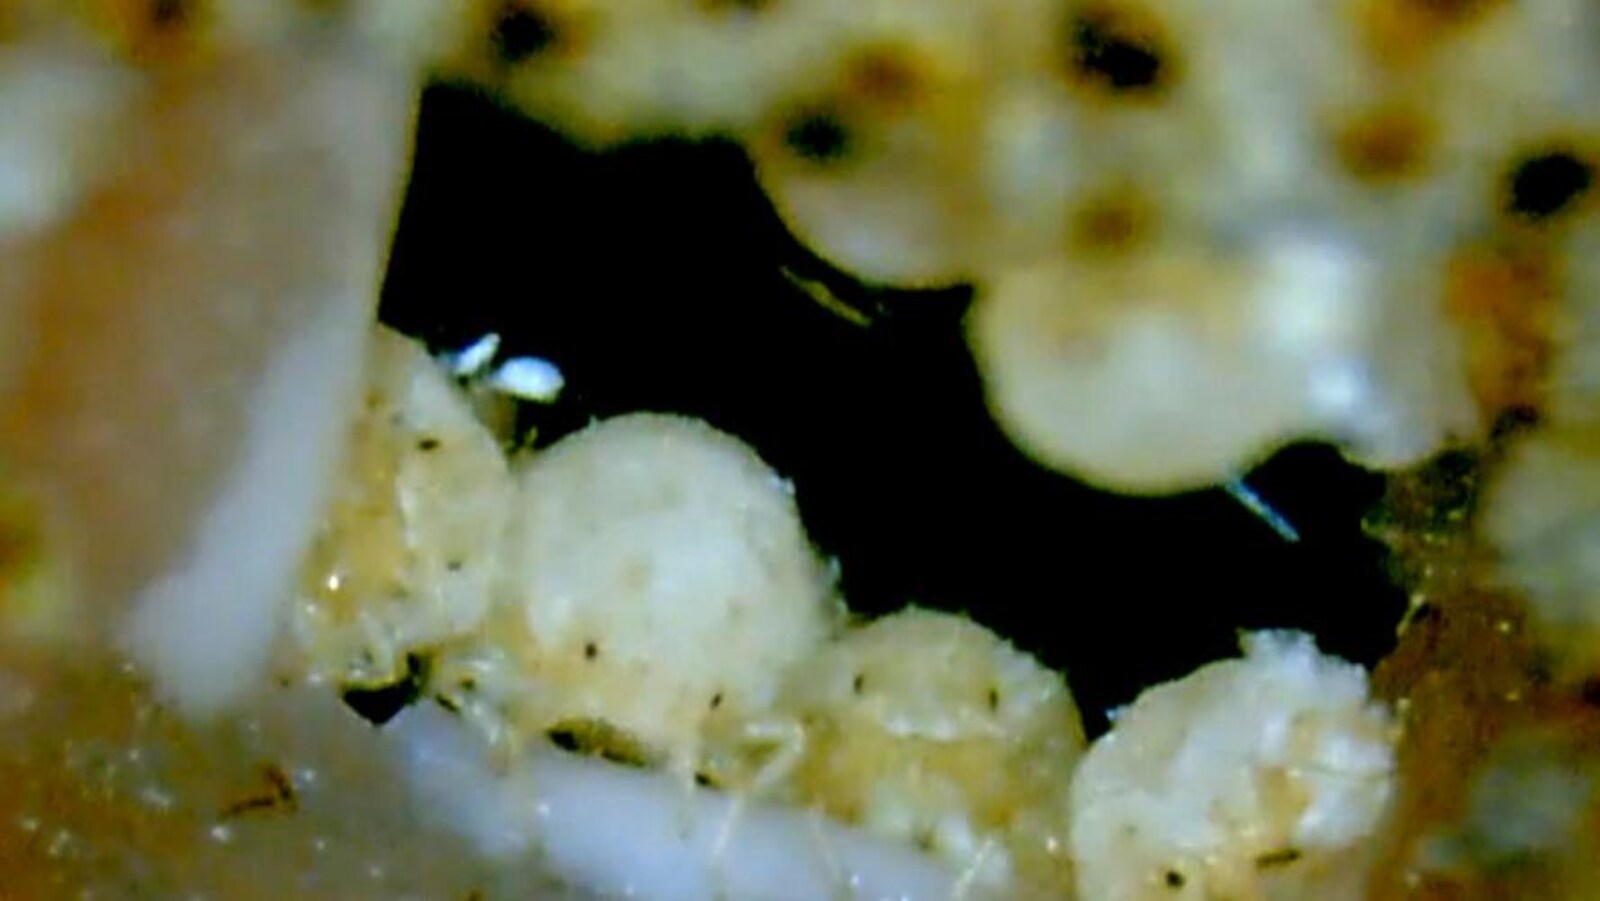 Des pucerons de l'espèce Nipponaphis monzeni colmatent une brèche dans leur colonie en sécrétant des liquides corporels.